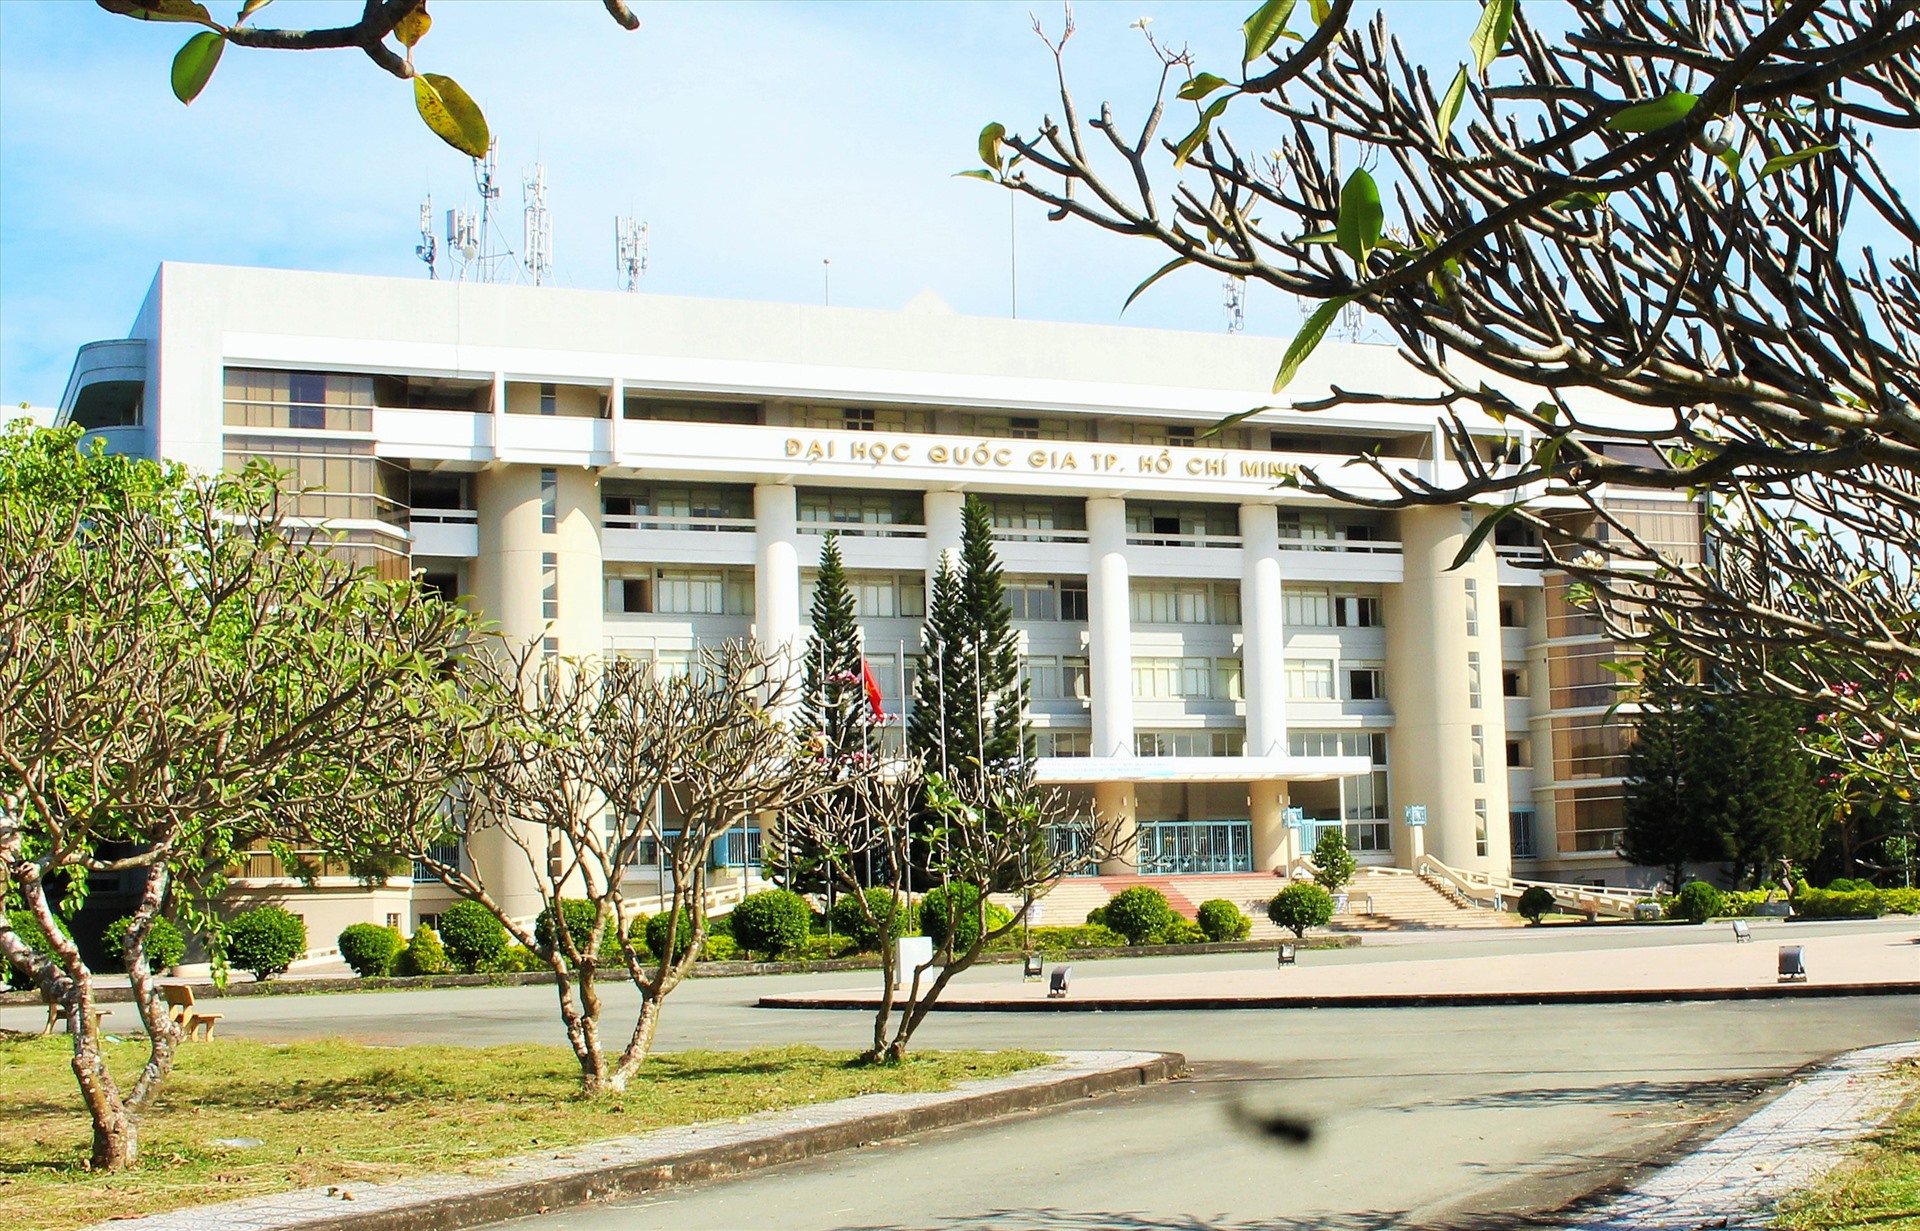 Khu vực phía Đông TPHCM hiện nay là nơi có mật độ đào tạo đại học và nghiên cứu khoa học cao nhất cả nước với Đại học Quốc gia Thành phố Hồ Chí Minh (với 7 đại học thành viên), Đại học Sư phạm Kỹ thuật, Đại học Nông lâm, Đại học Văn hoá, Đại học Việt Đức, Đại học Fulbright,…  Ảnh: Minh Quân